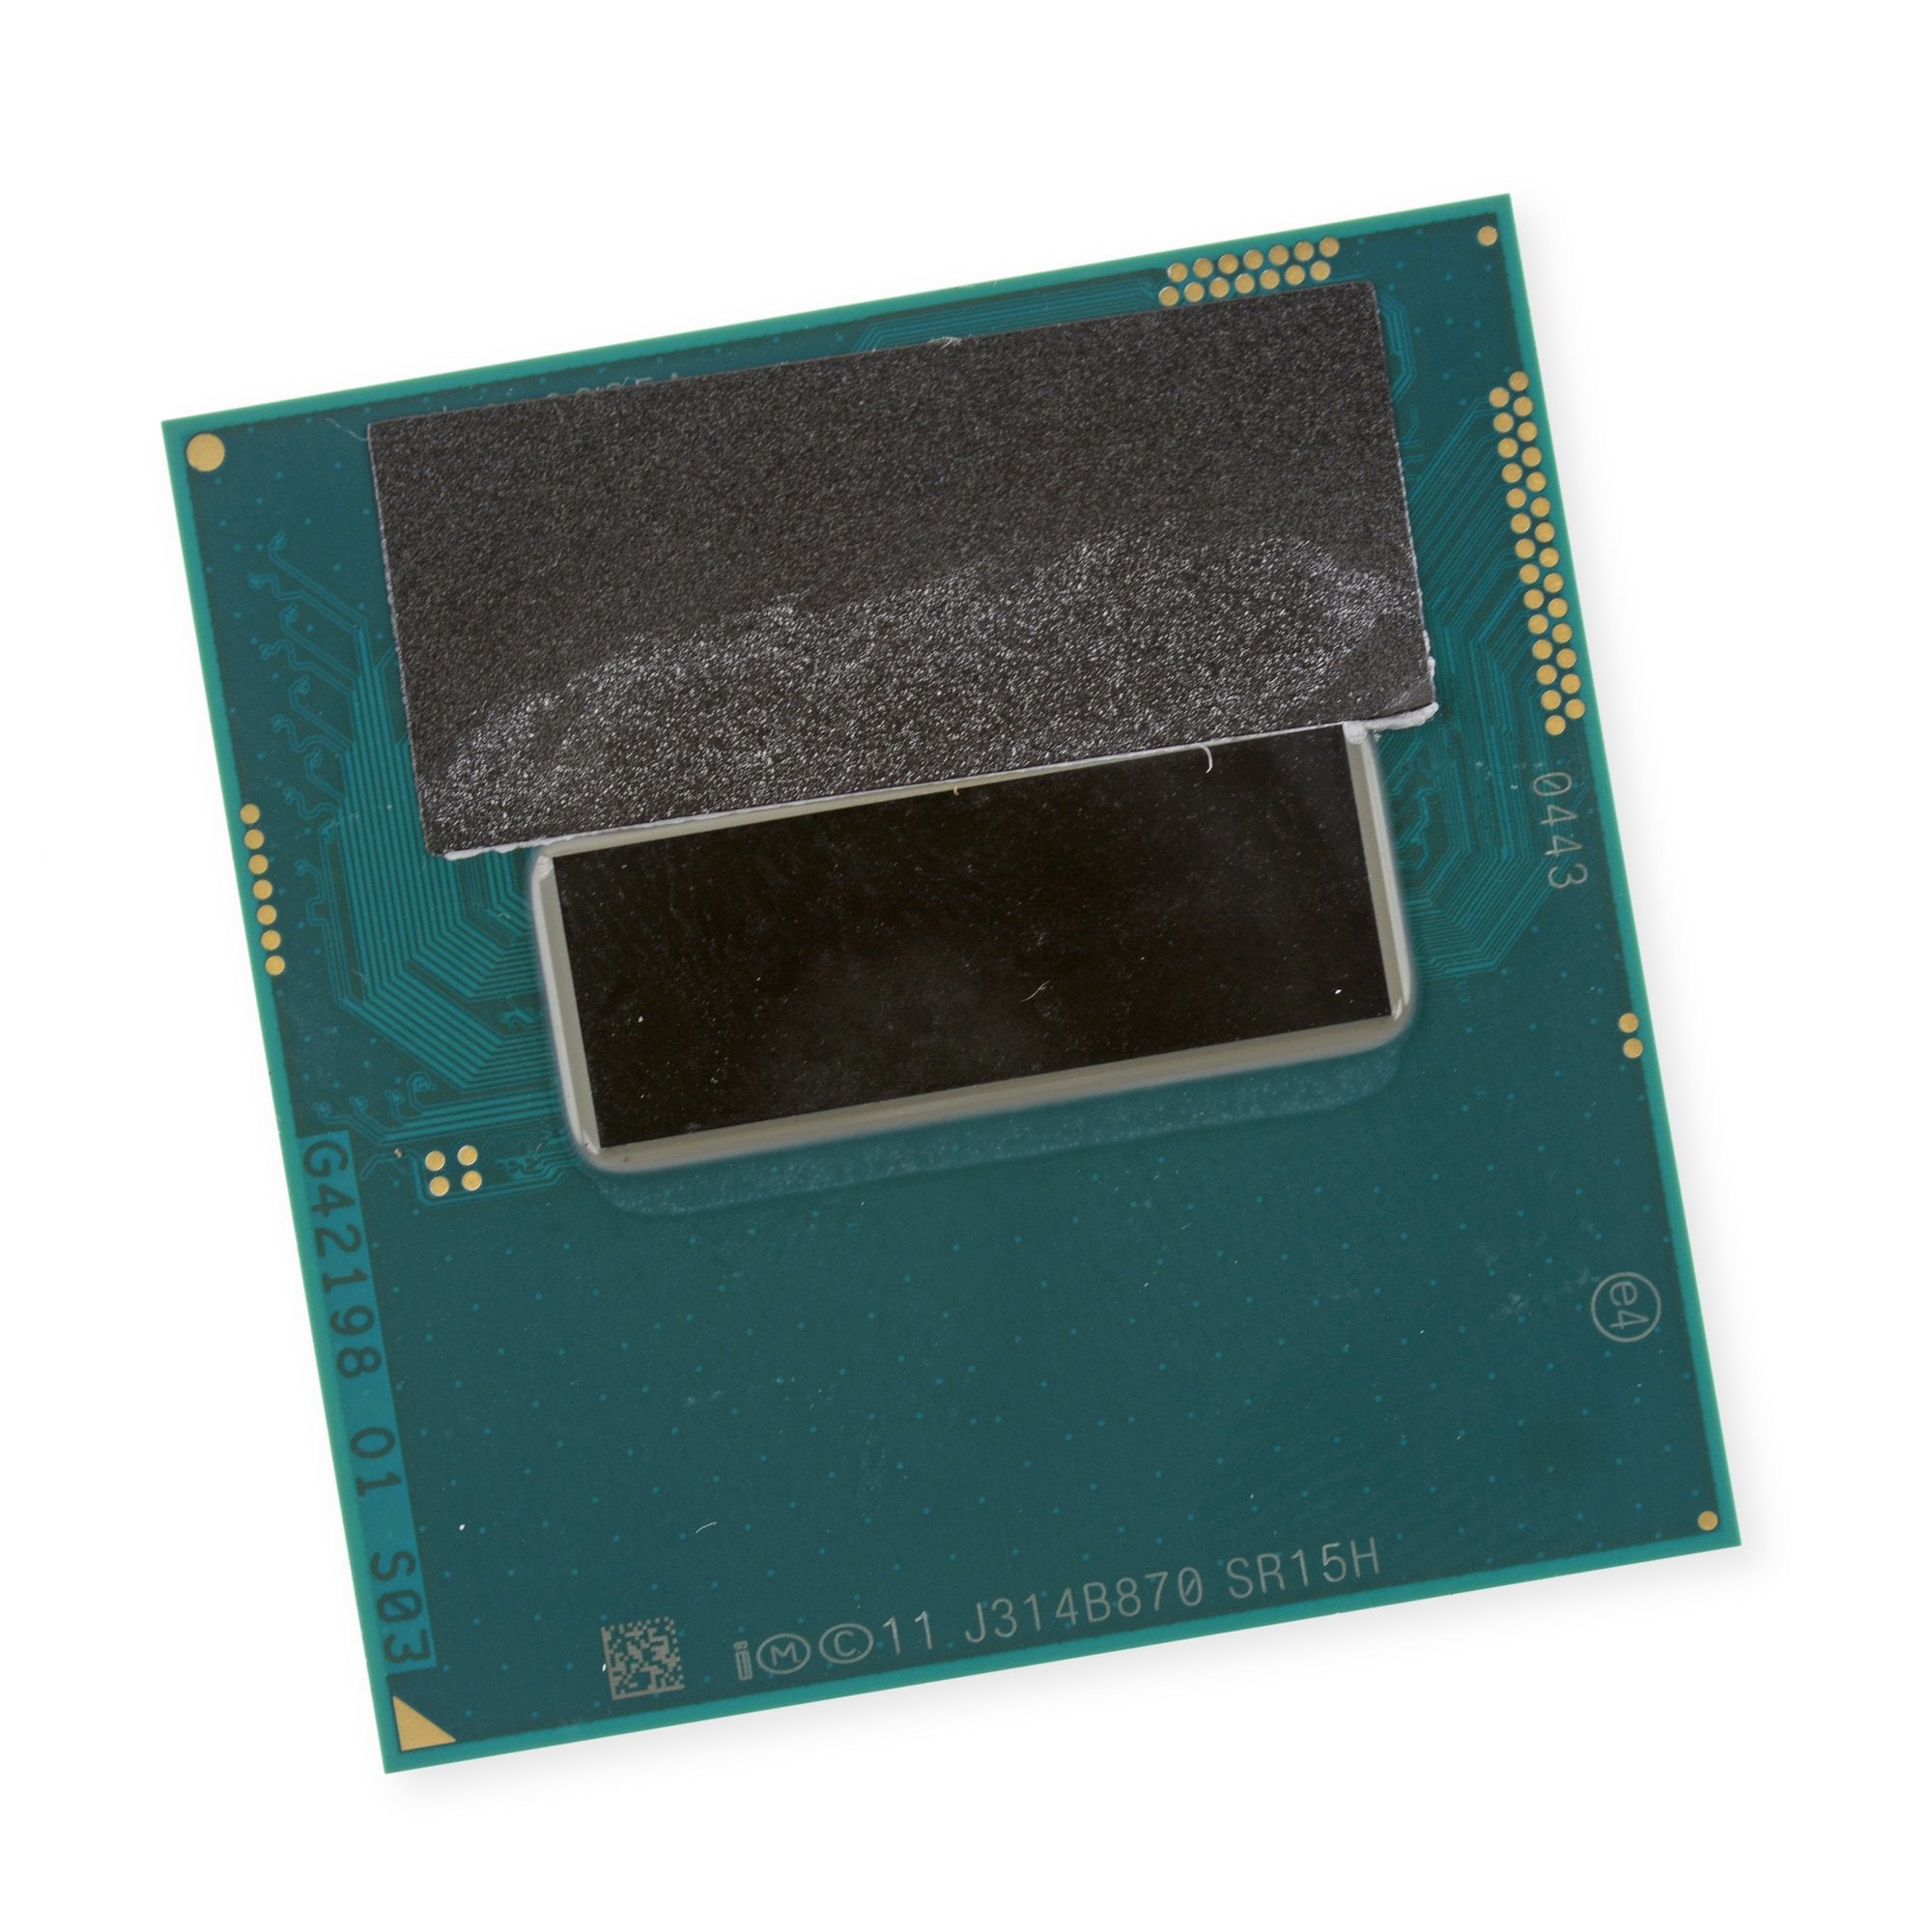 HP ENVY TouchSmart M7-J020DX 2.4 GHz i7-4700MQ CPU